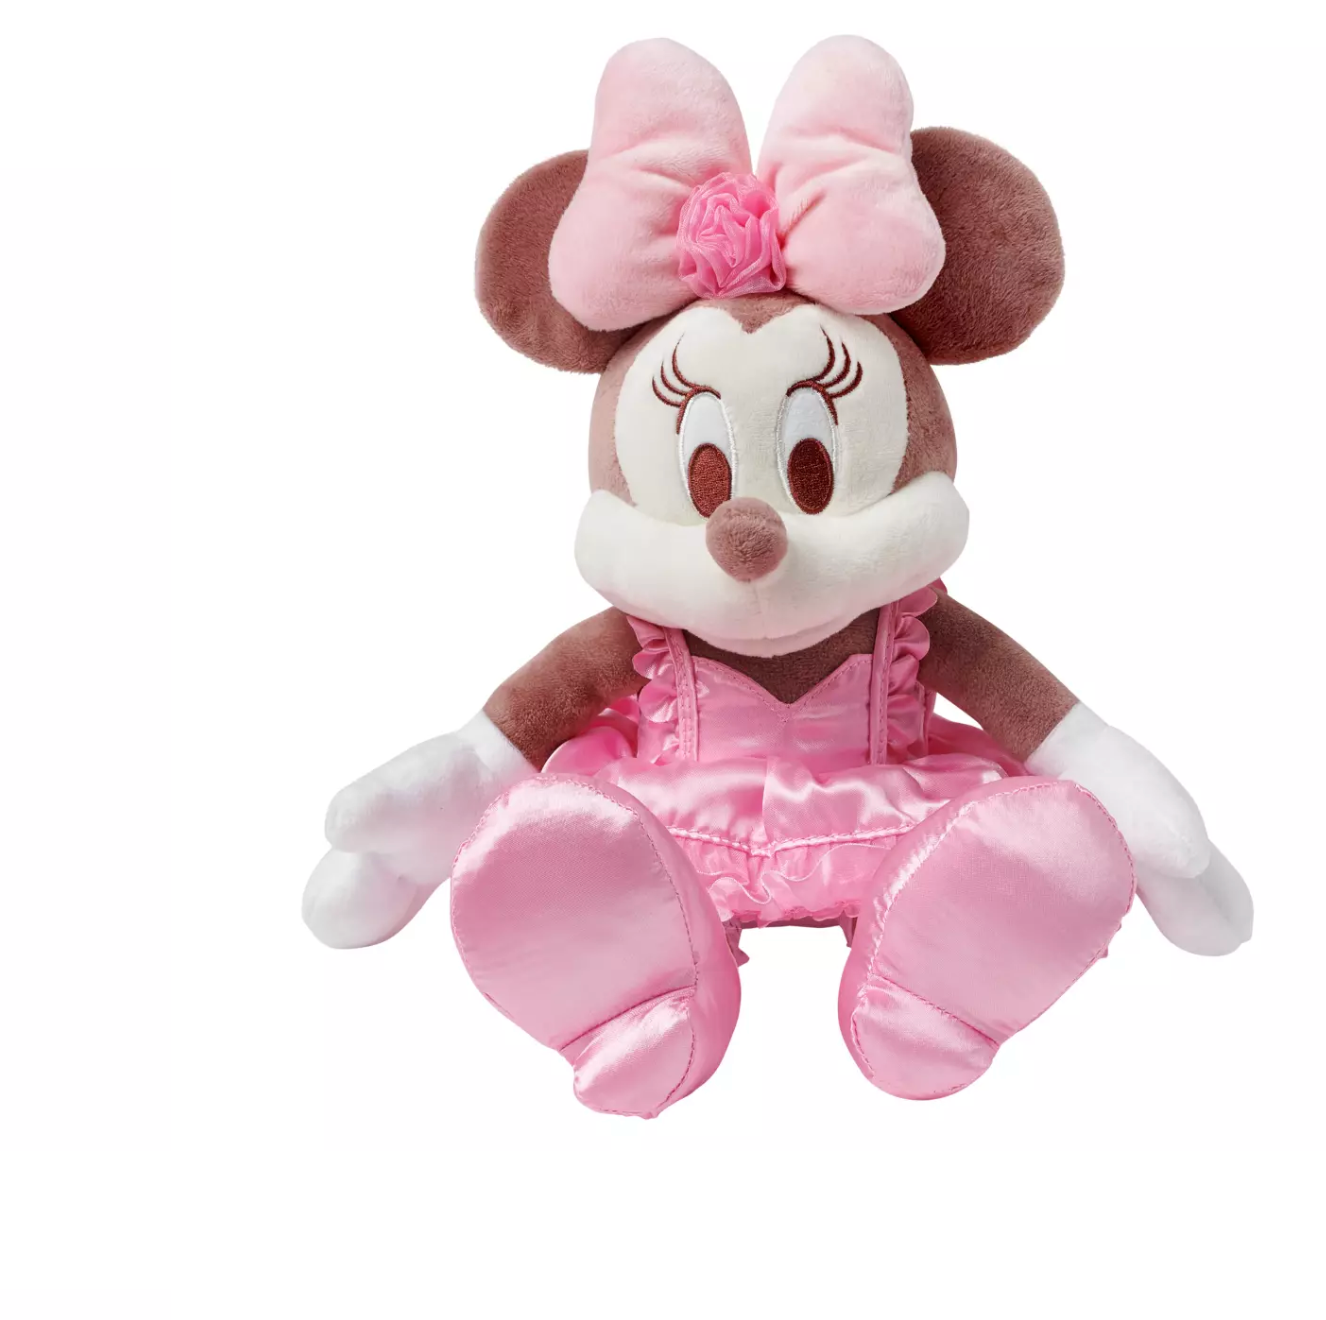 Disney Valentine's Day Minnie Pink Satin Dress Plush New with Tag